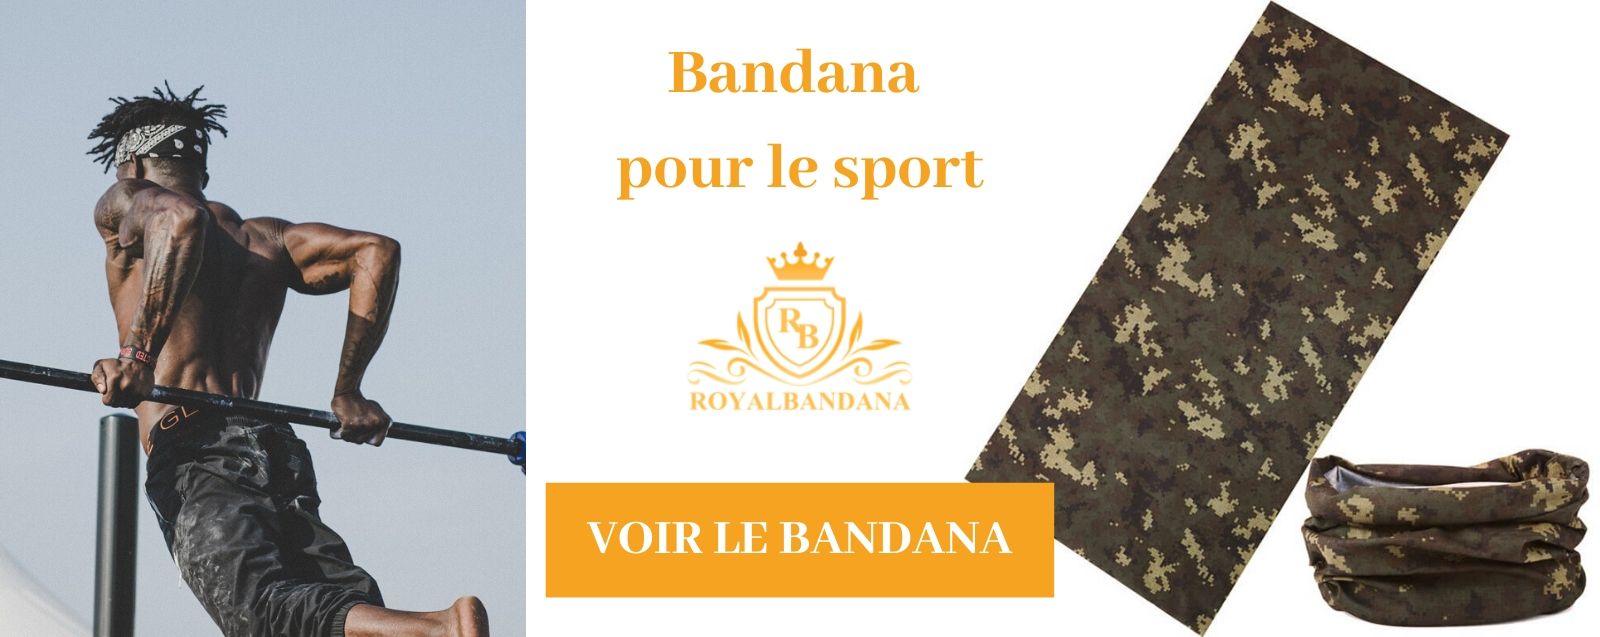 voir bandana sport royalbandana